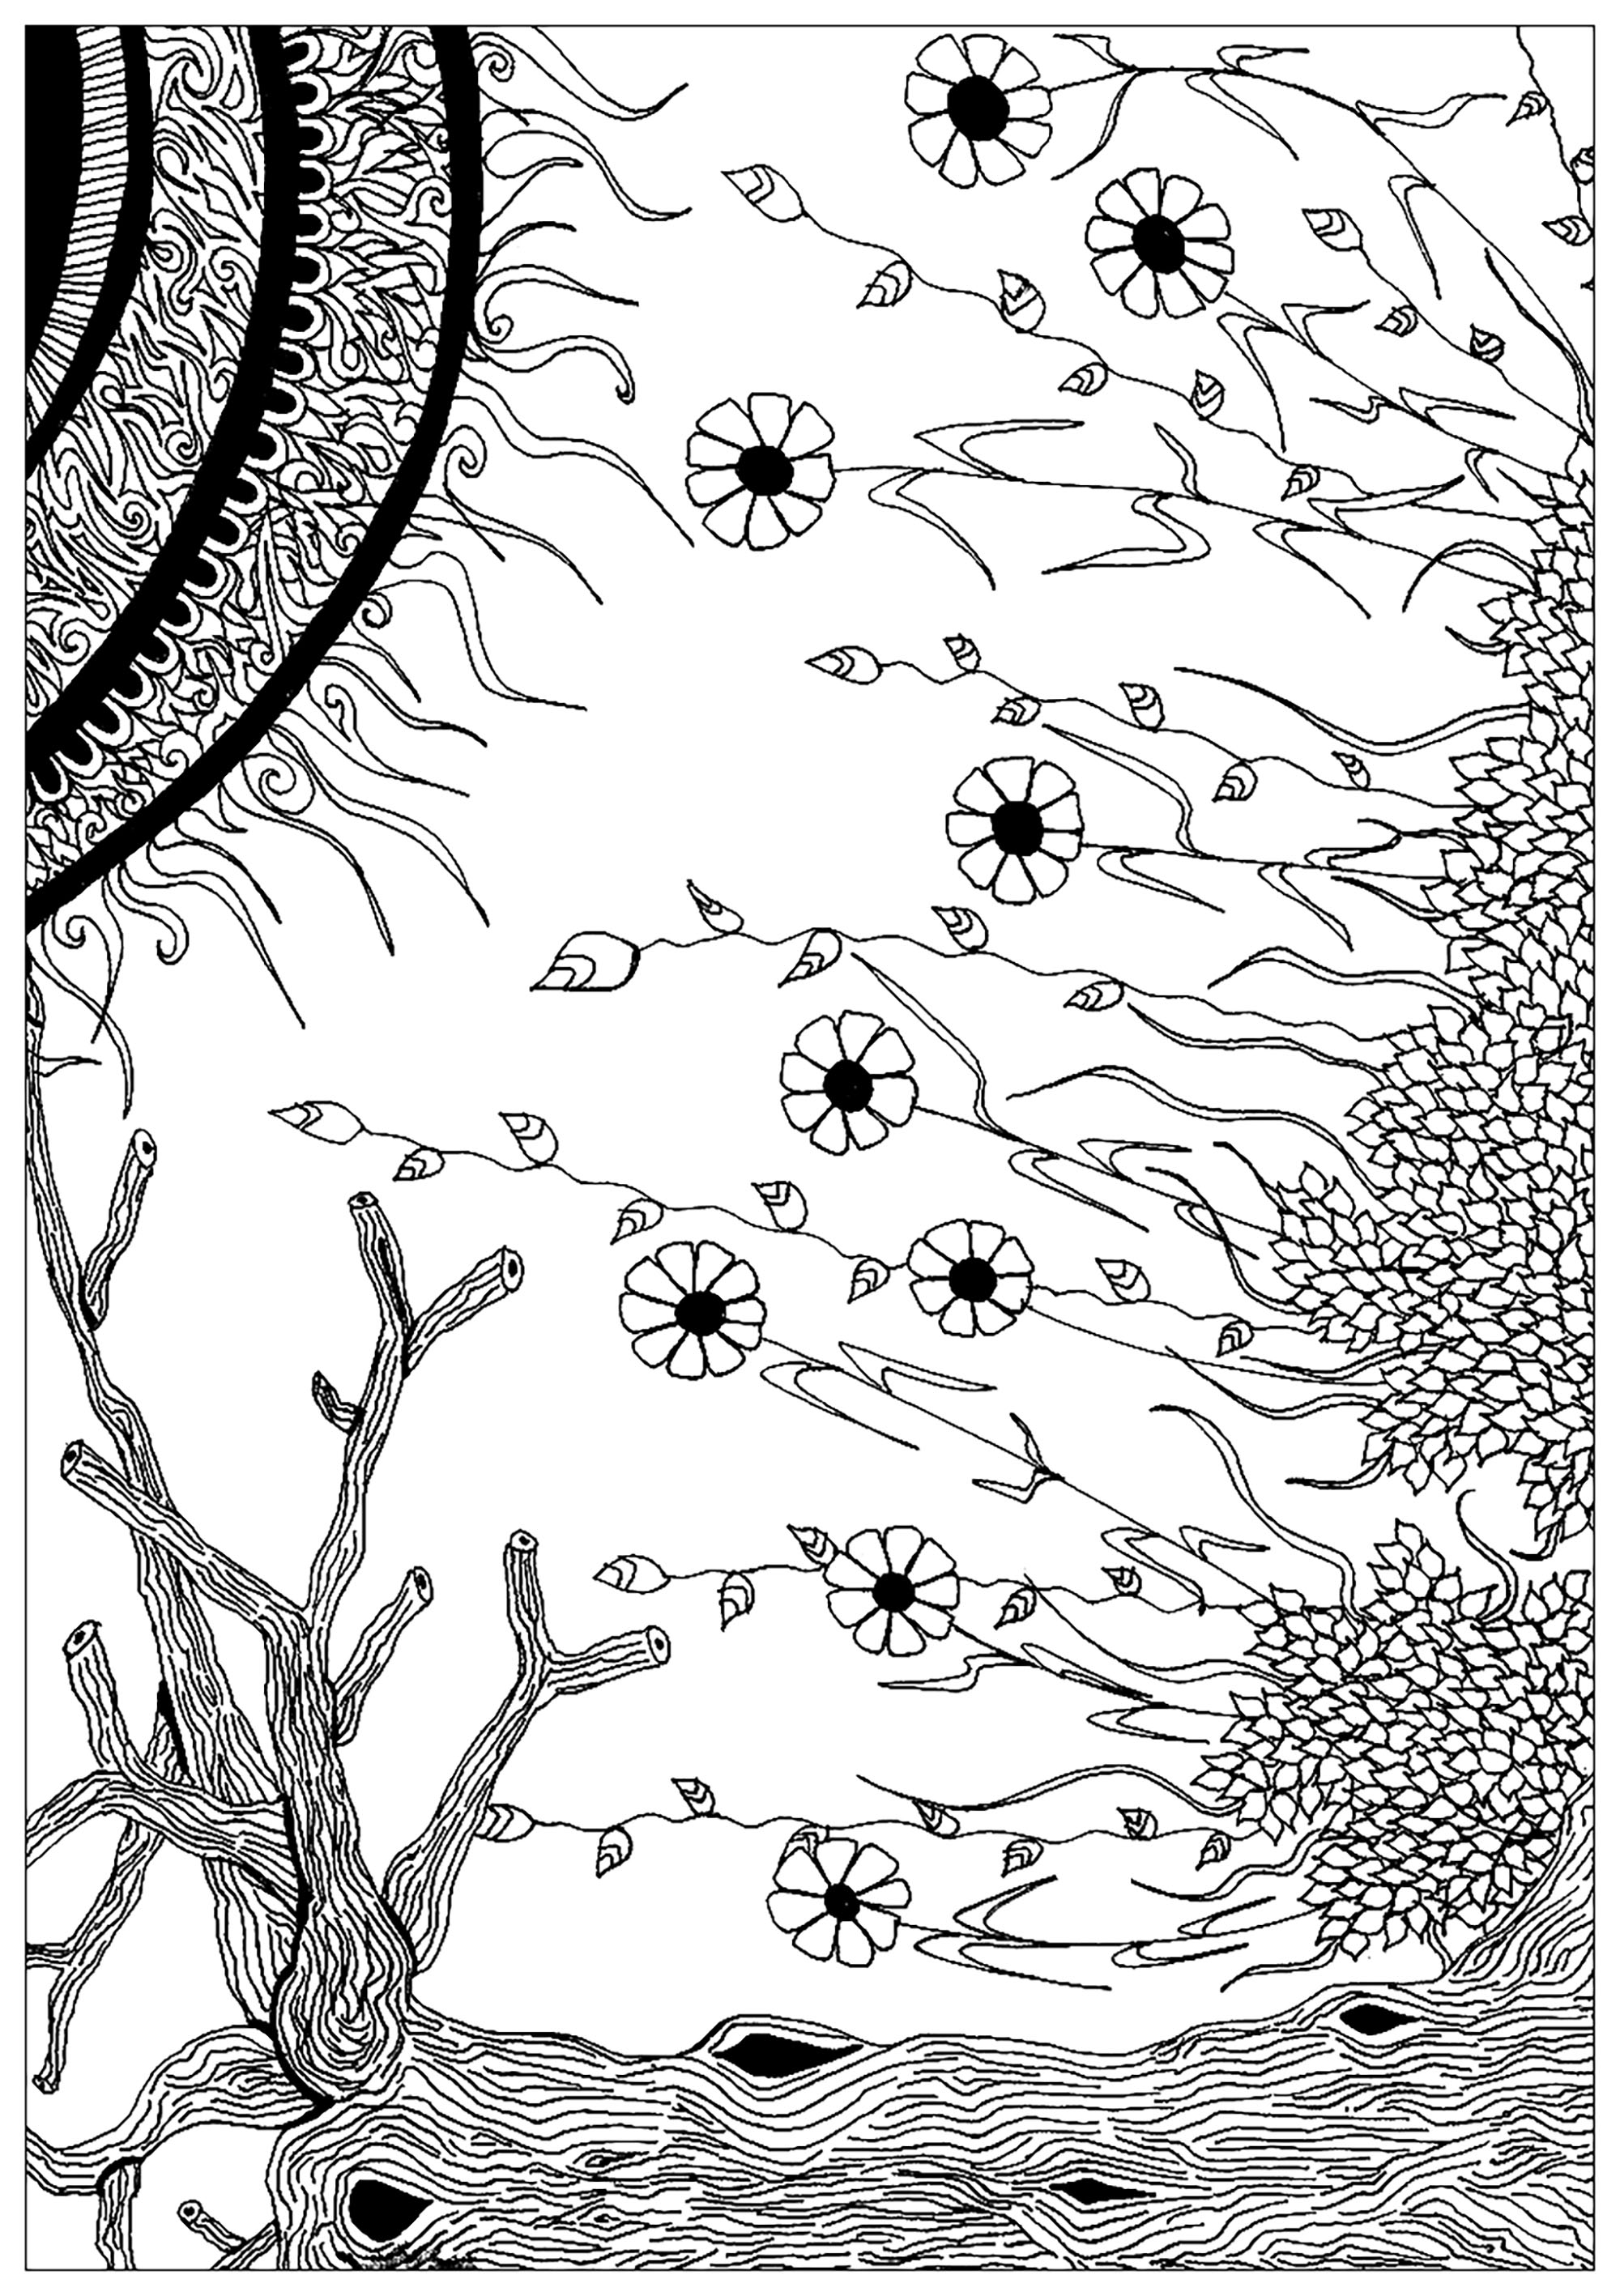 Dibujo compuesto de elementos vegetales, que representa el encuentro entre un espermatozoide y un óvulo